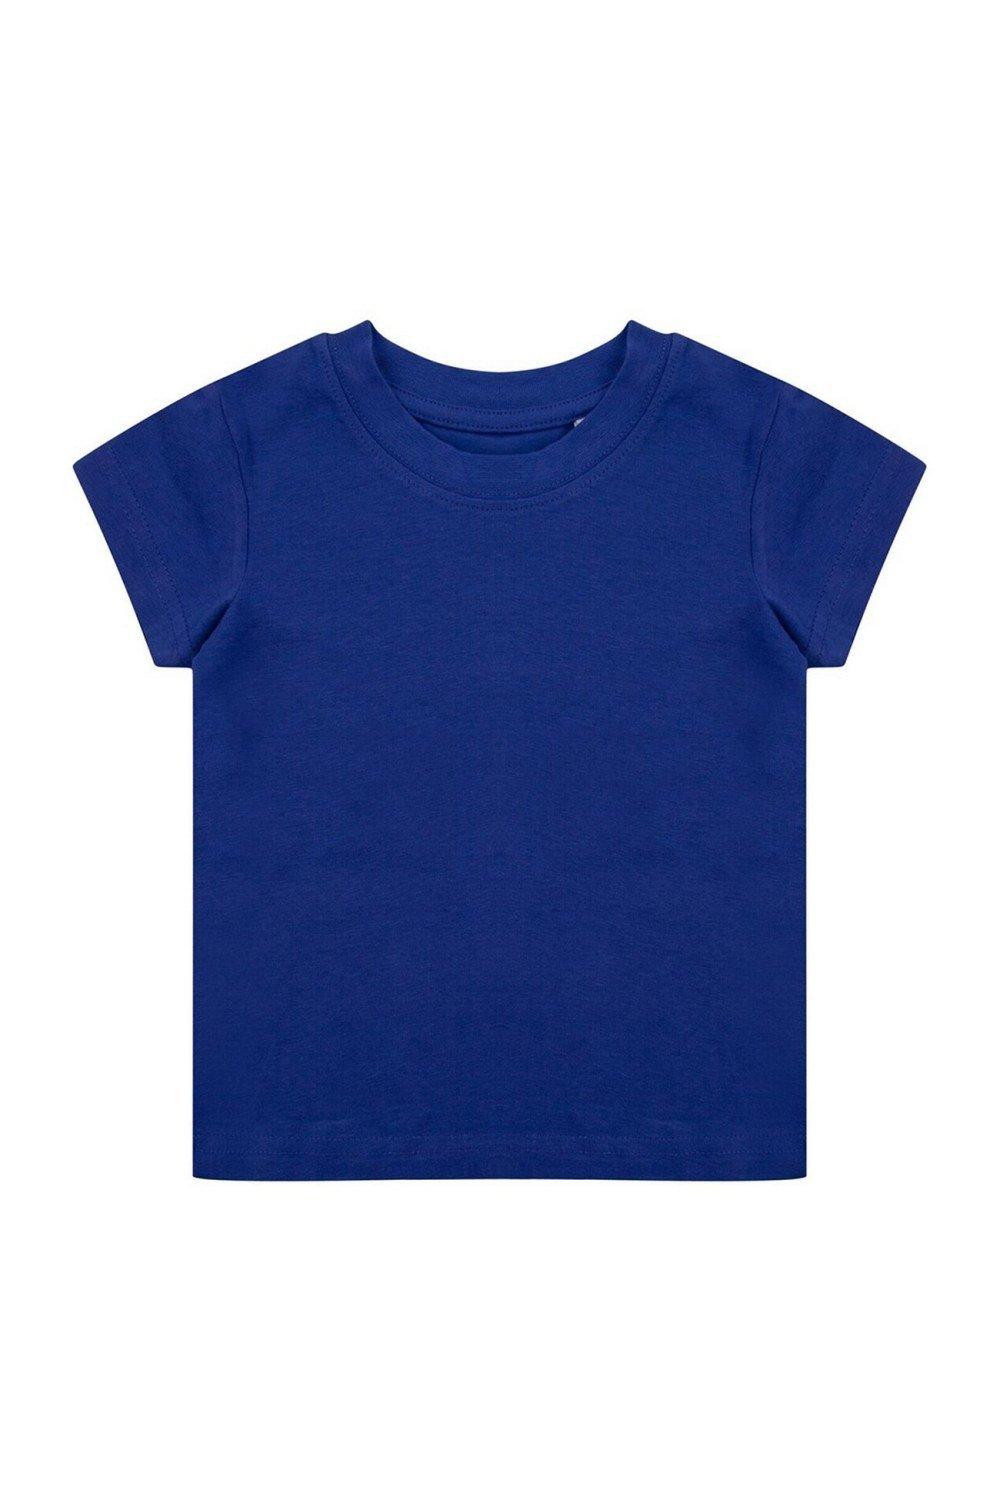 Органическая футболка Larkwood, синий органическая футболка larkwood натуральный